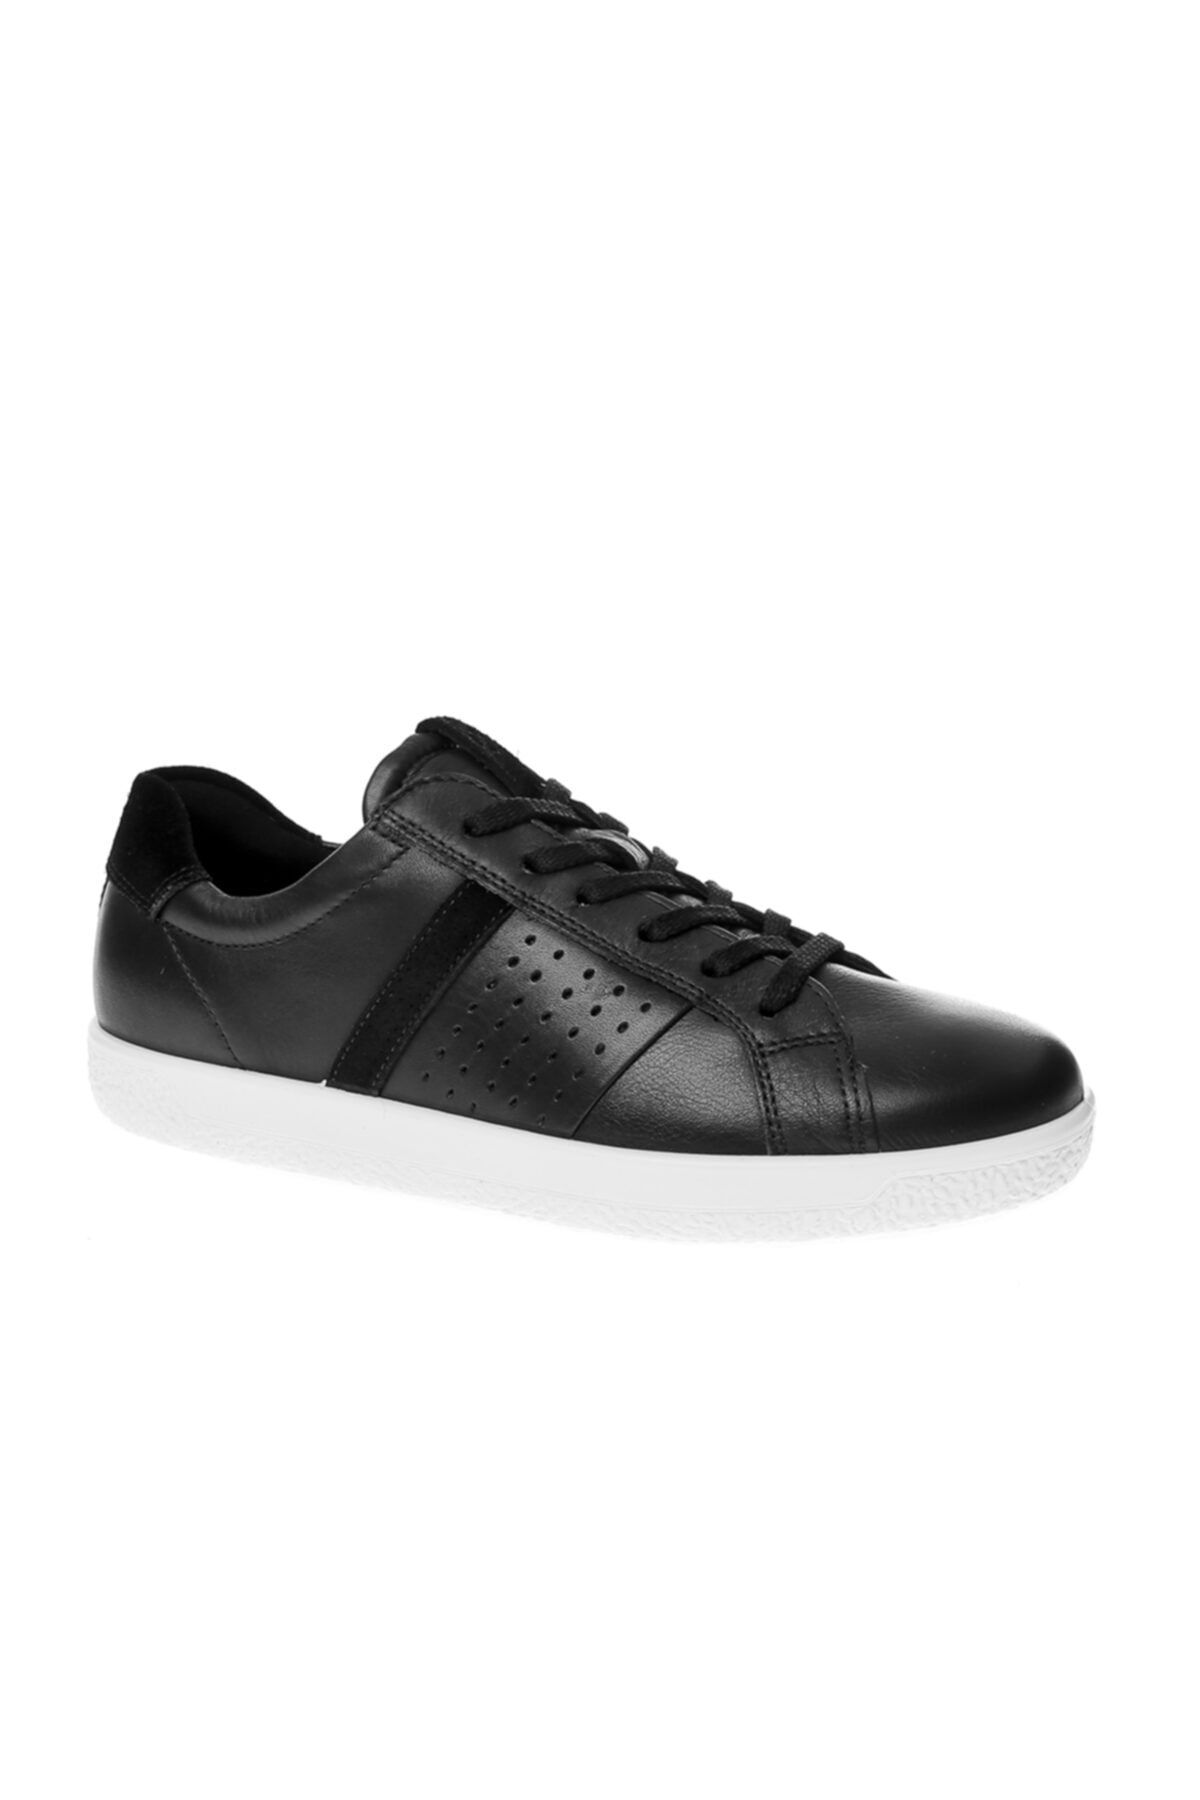 Ecco Kadın Oxford/ayakkabı 40070351052 Soft 1 W Black/black